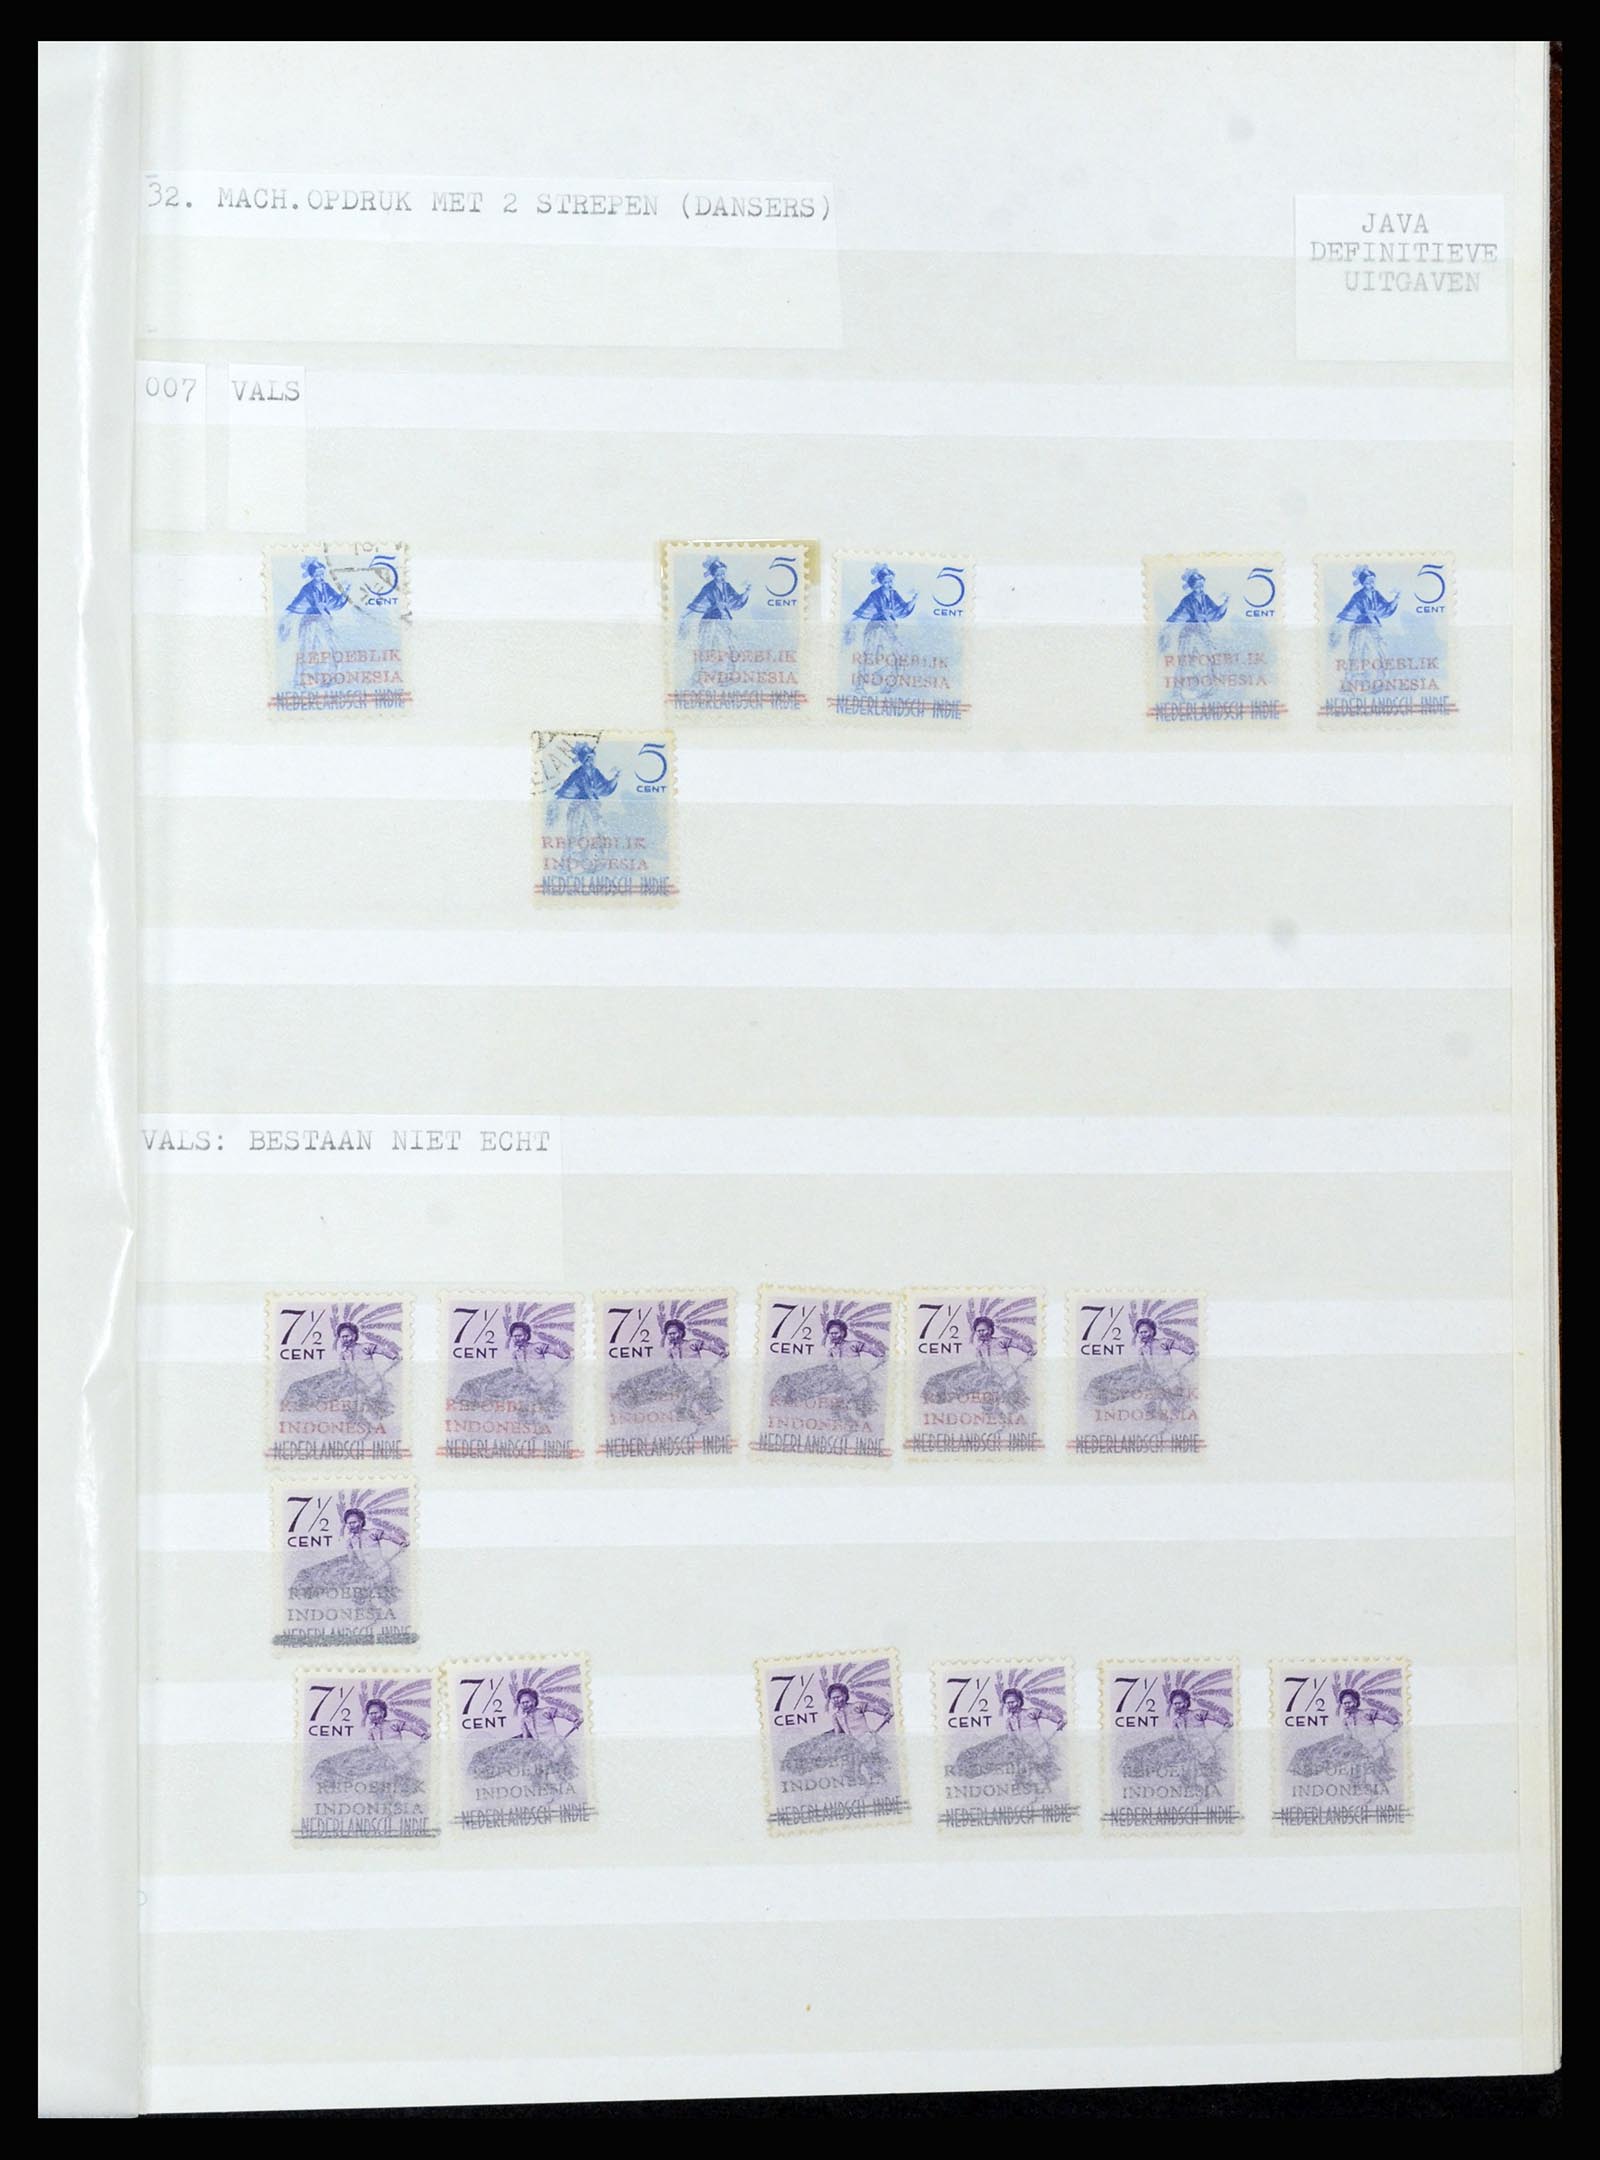 36742 313 - Stamp collection 36742 Dutch Indies interim period 1945-1949.